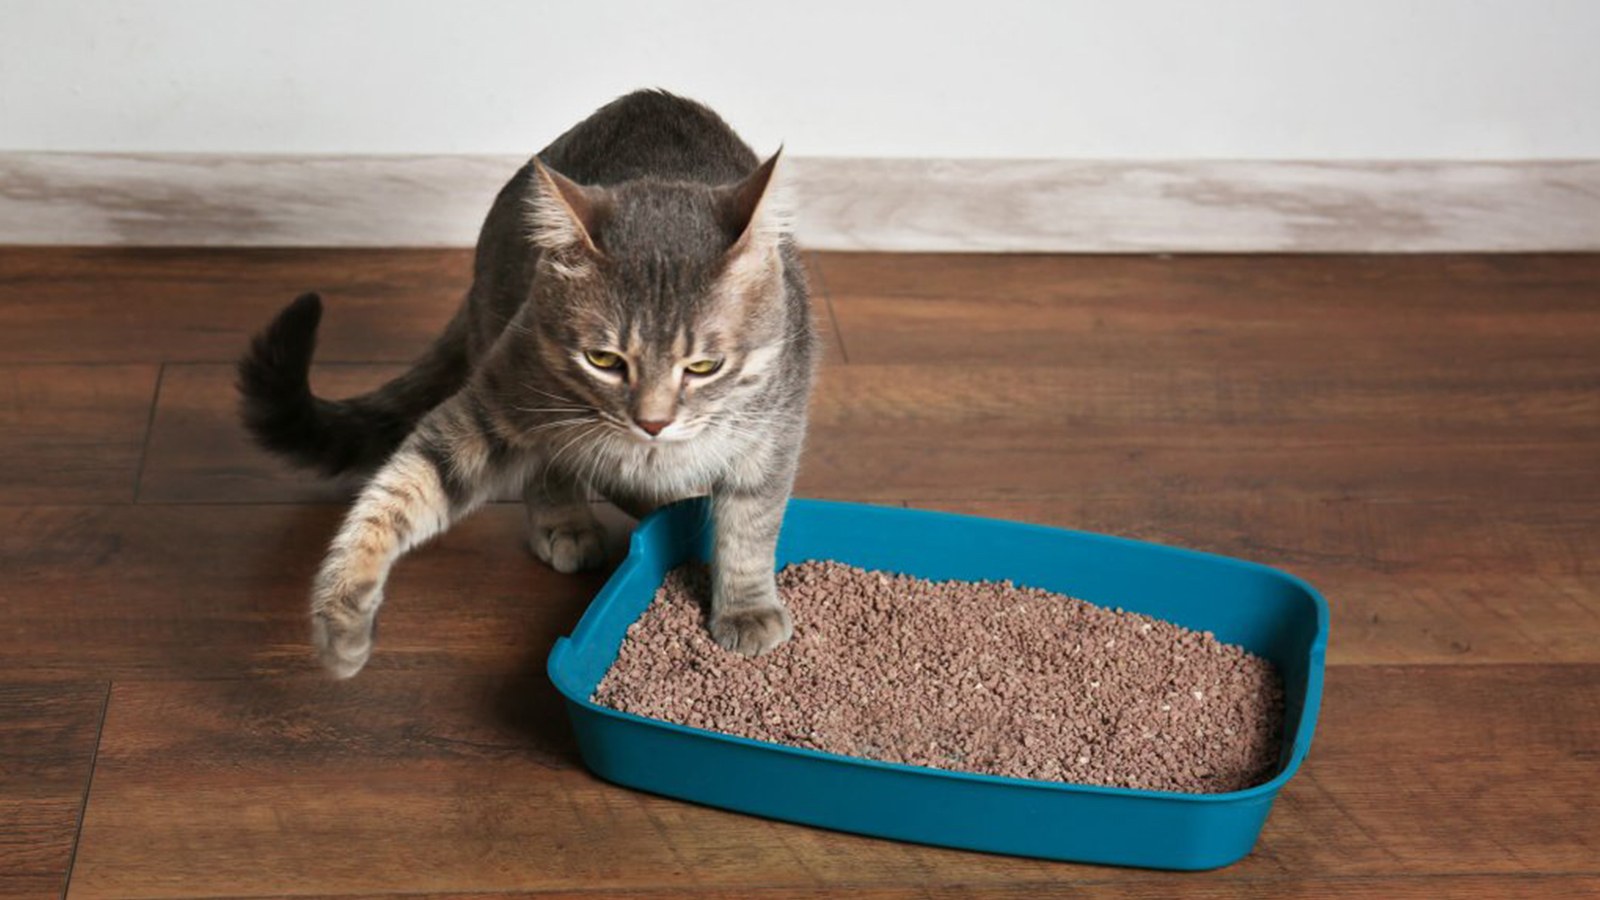 Saiba como limpar a caixa de areia do gato com praticidade